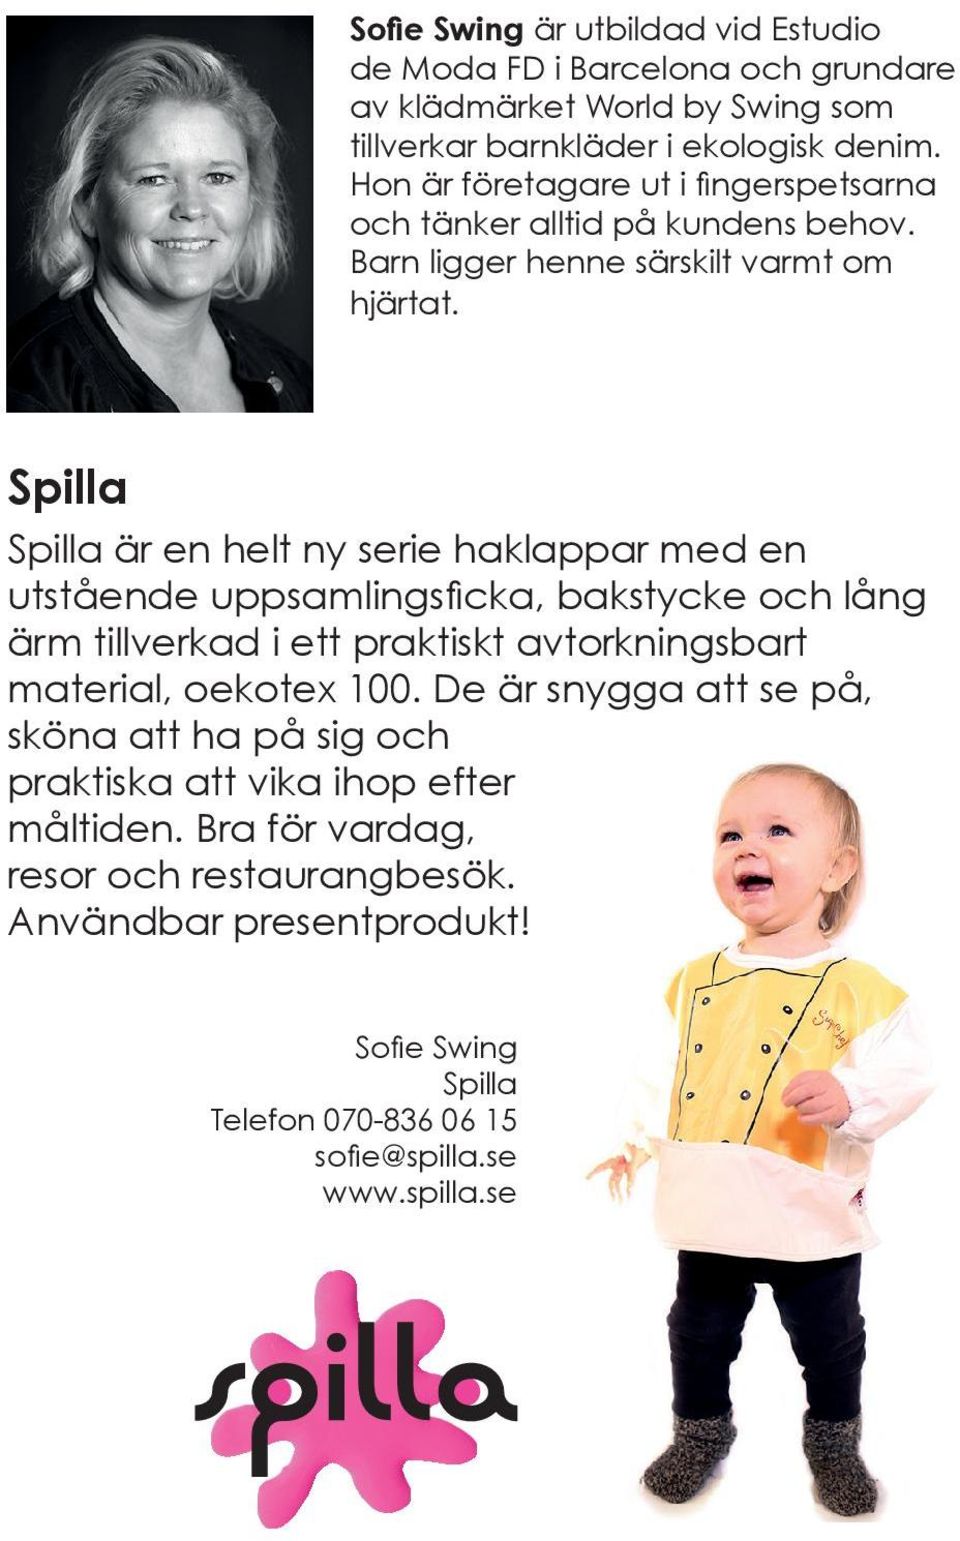 Spilla Spilla är en helt ny serie haklappar med en ärm tillverkad i ett praktiskt avtorkningsbart material, oekotex 100.